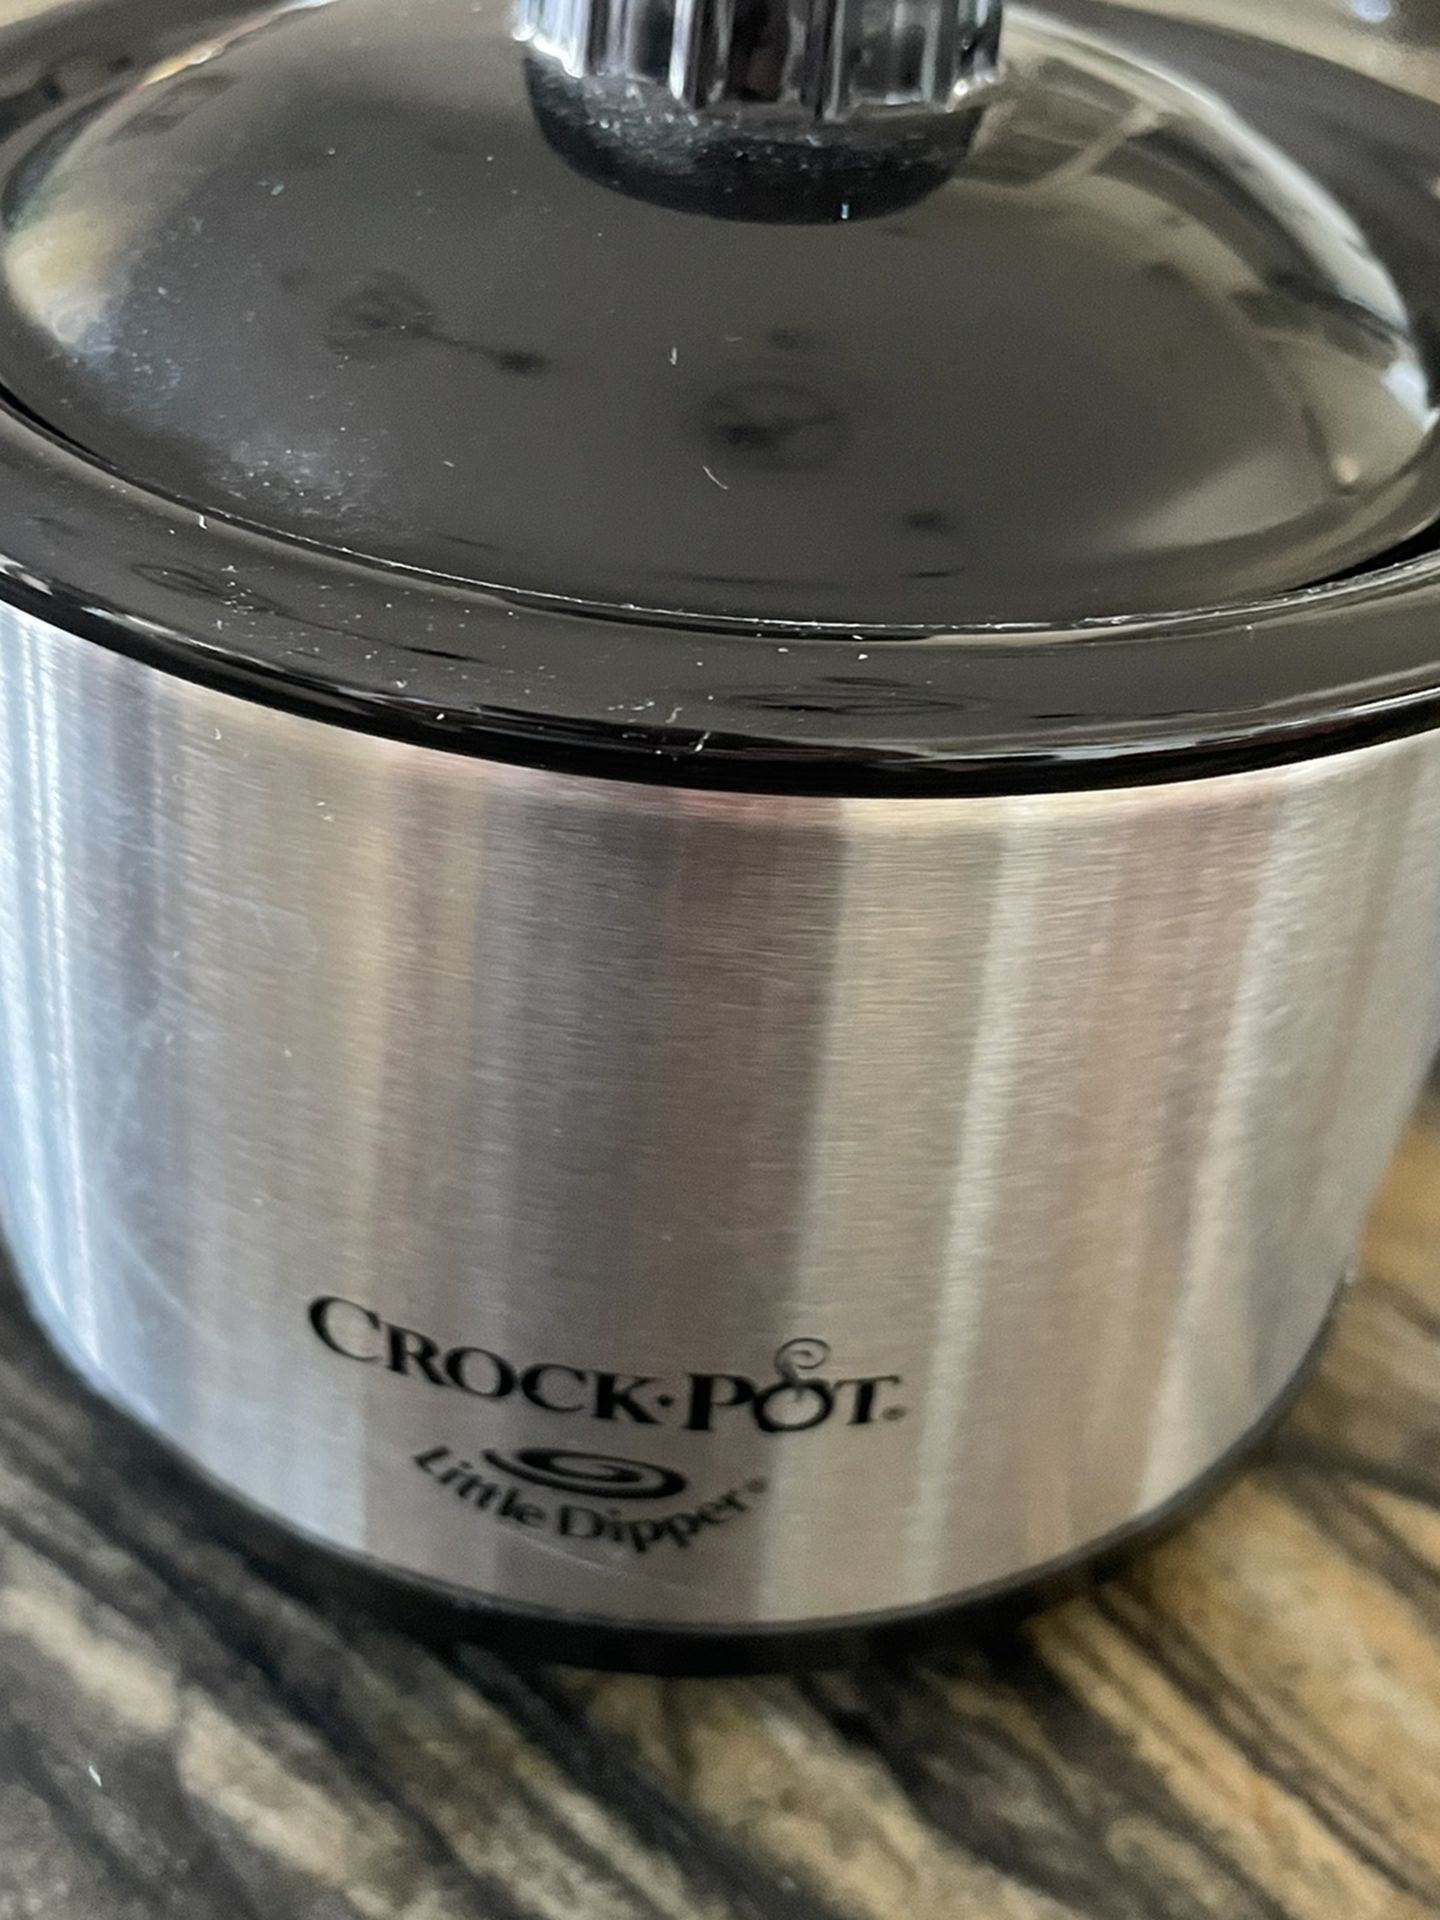 Crock-Pot Little Dipper